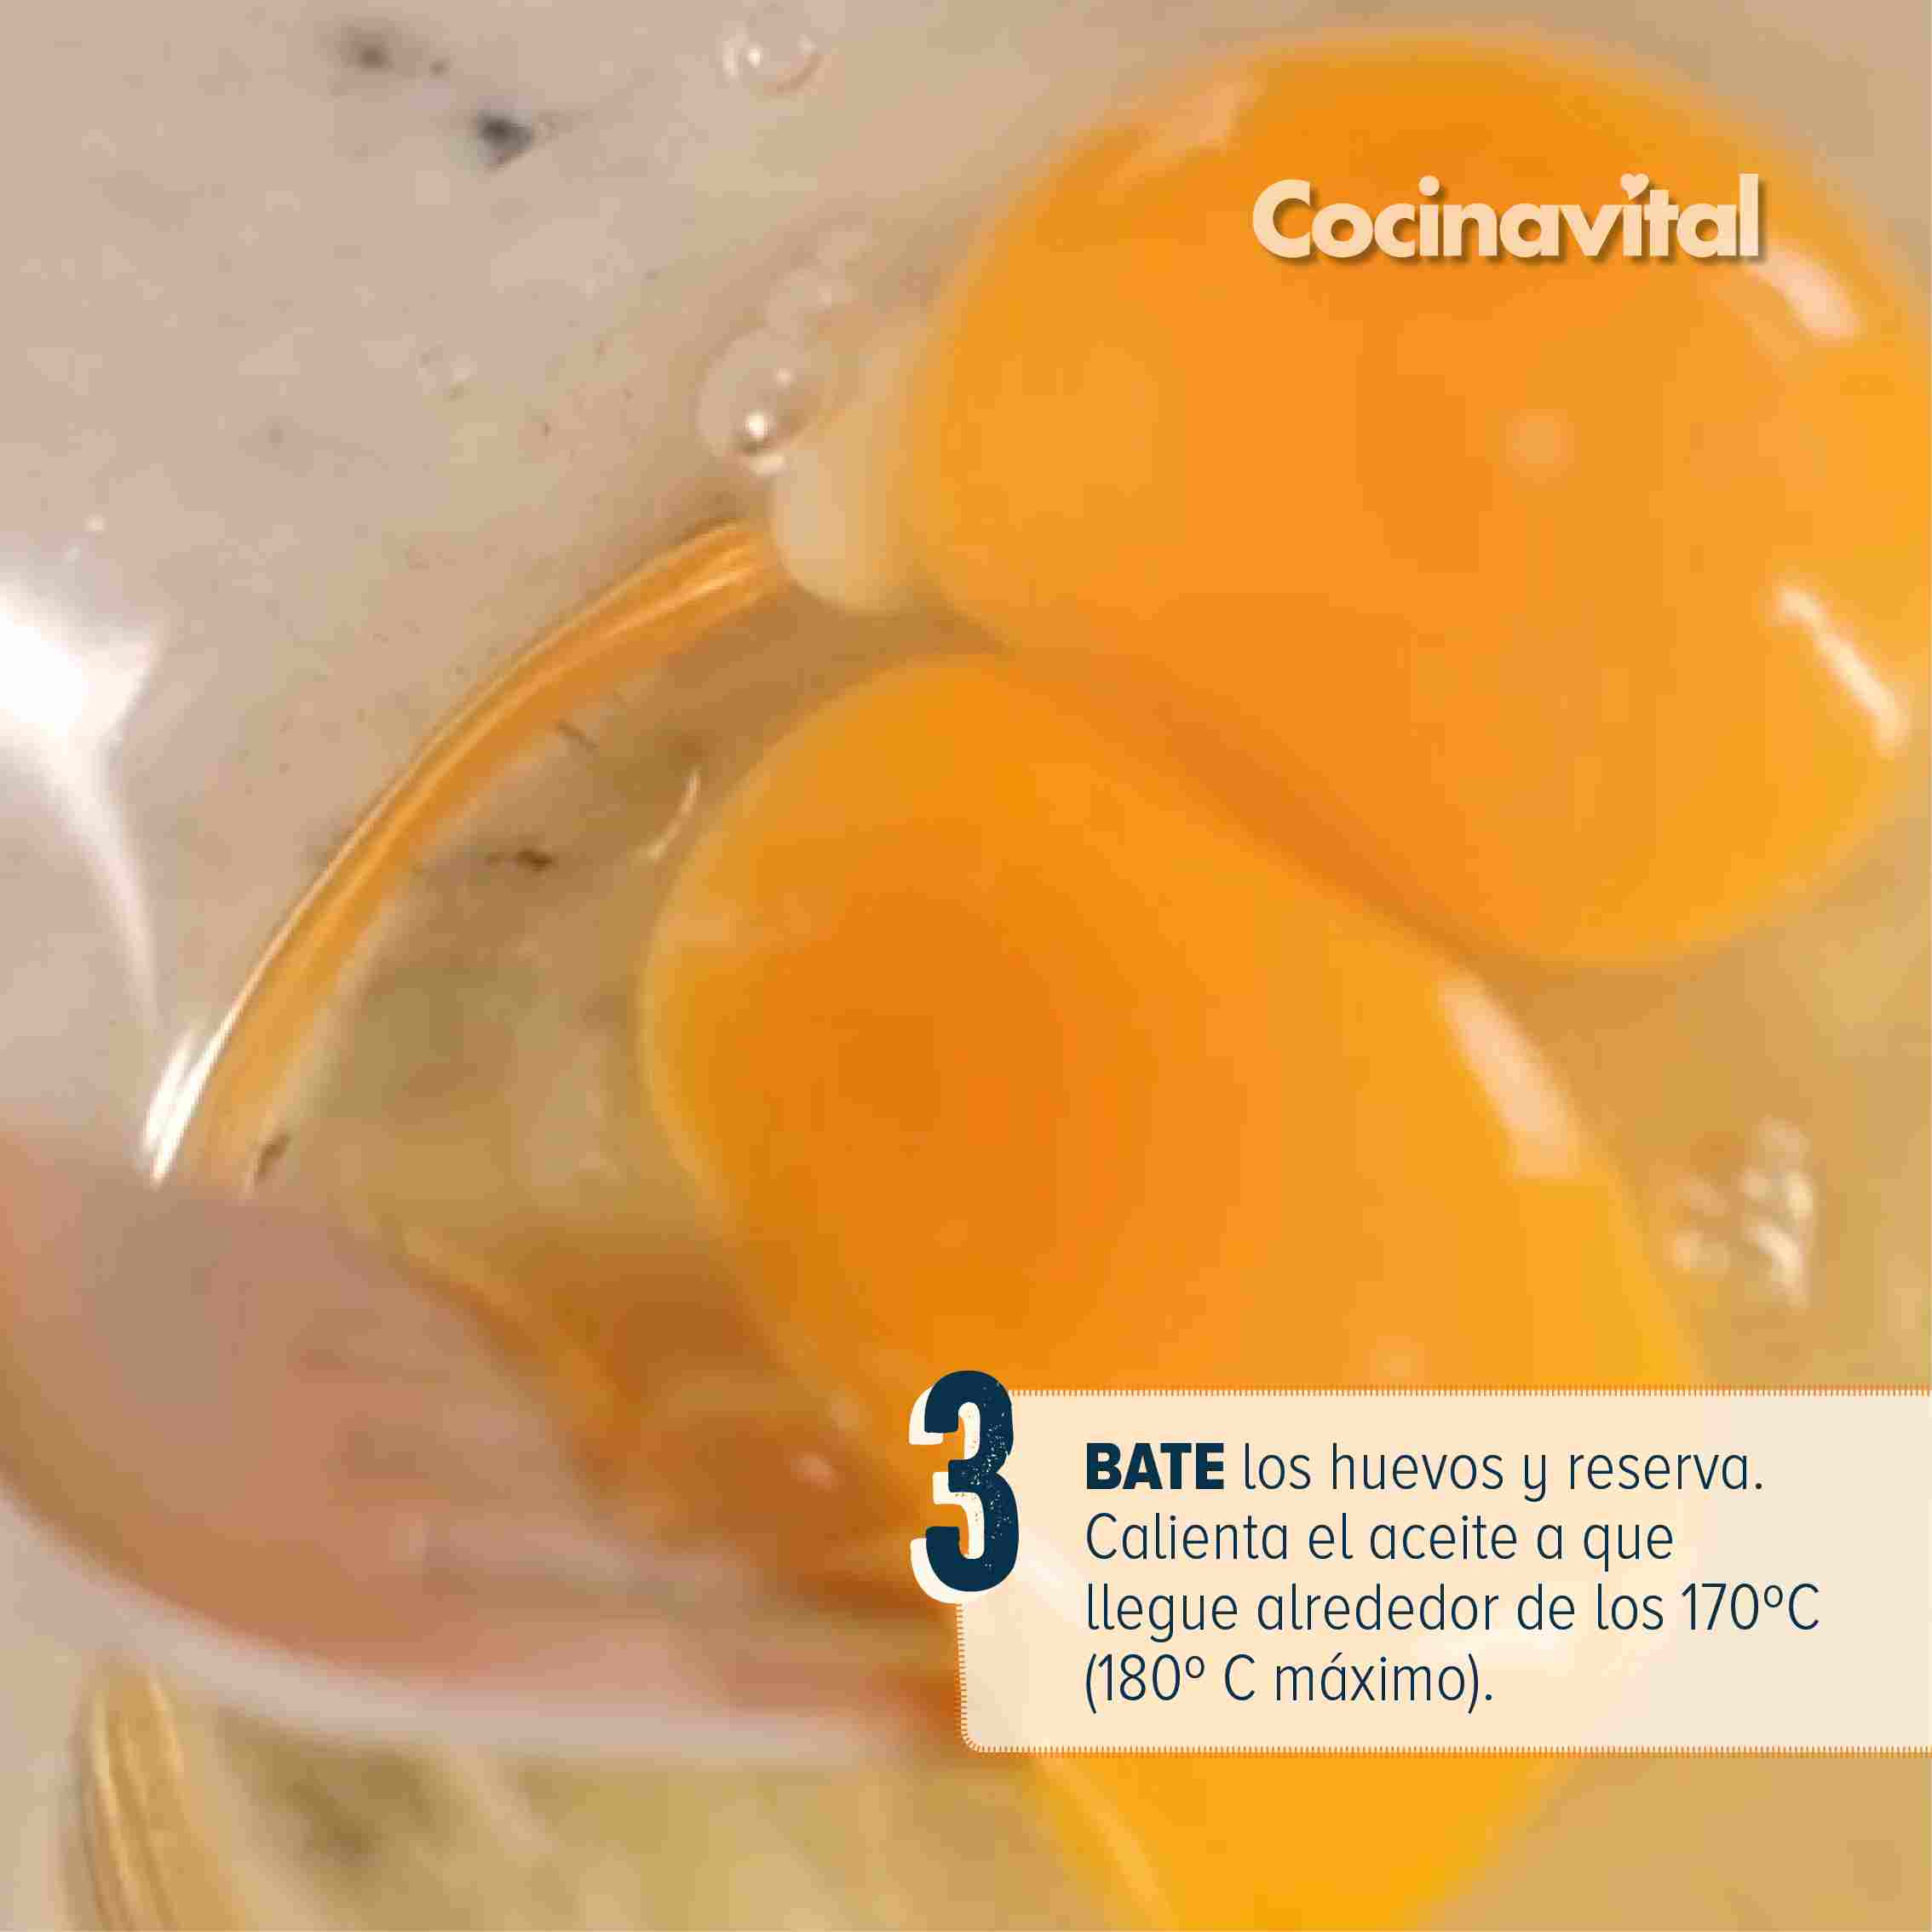 Bate los huevos